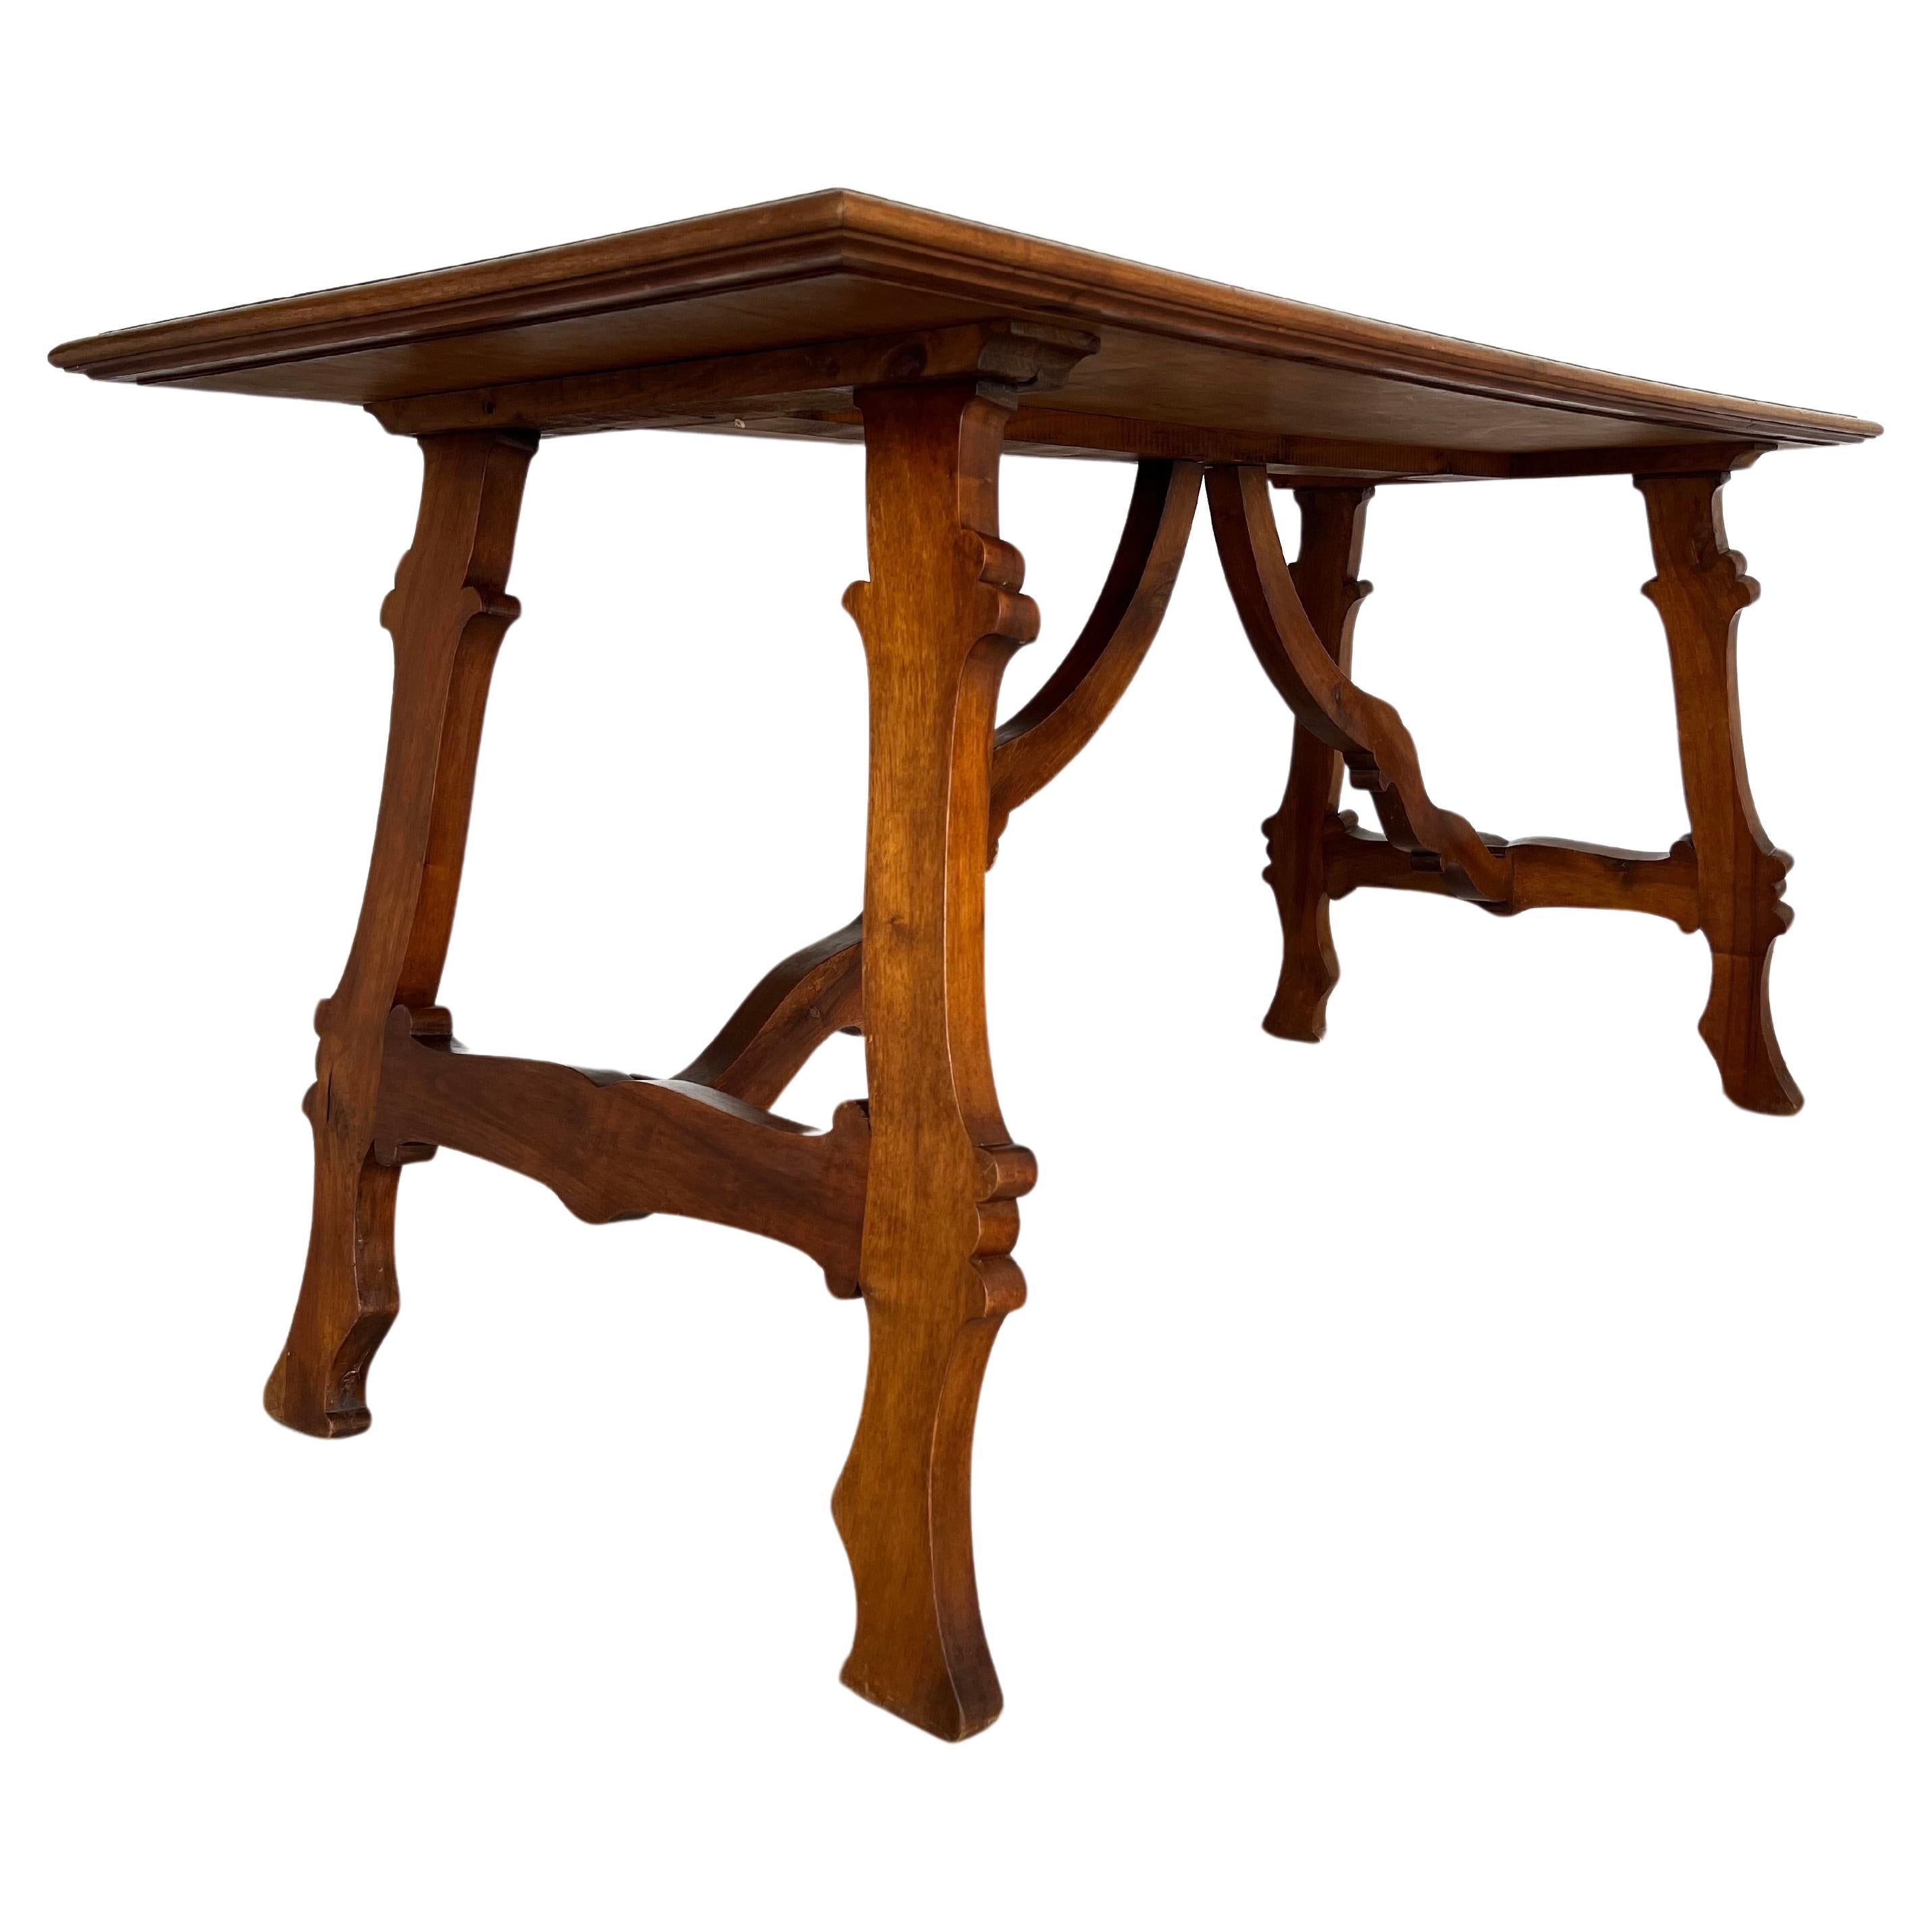 Table de salle à manger de réfectoire toscan de la Renaissance italienne fabriquée à la main